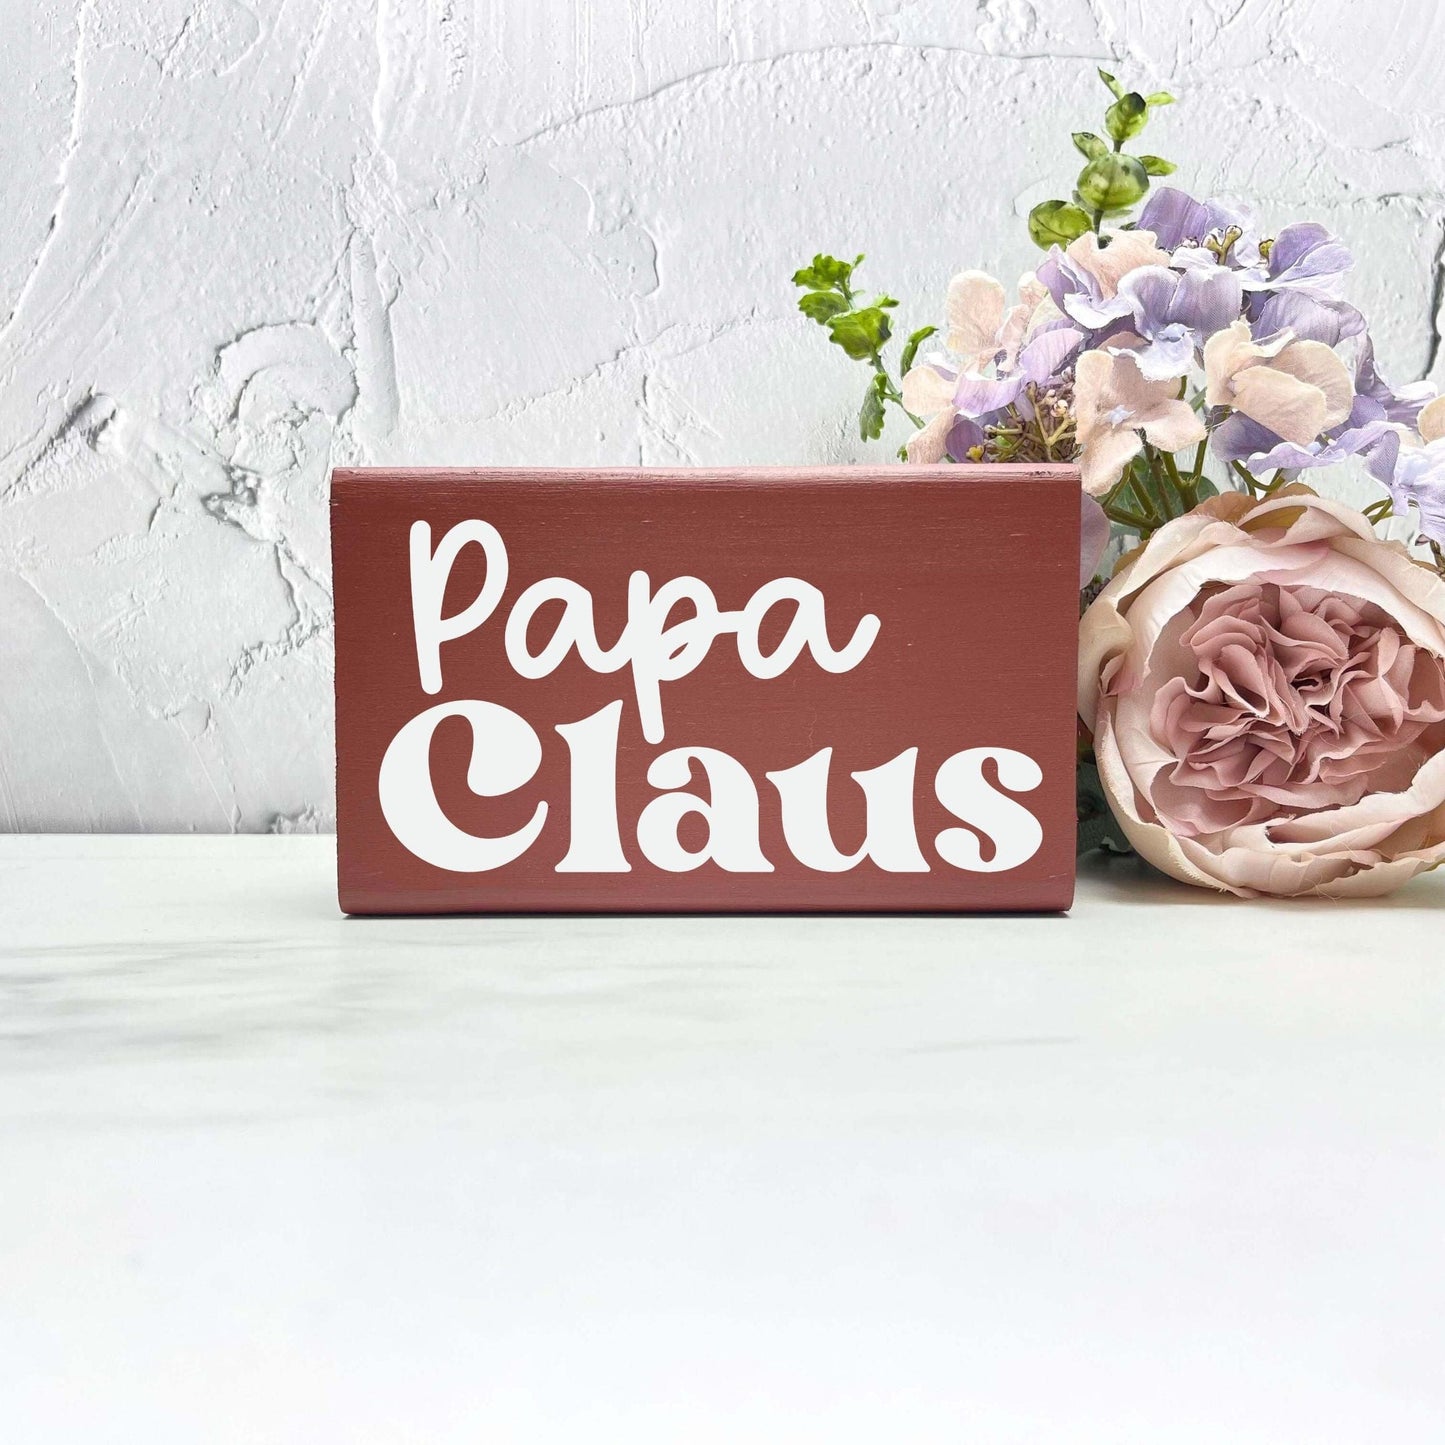 Papa Claus sign, christmas wood signs, christmas decor, home decor